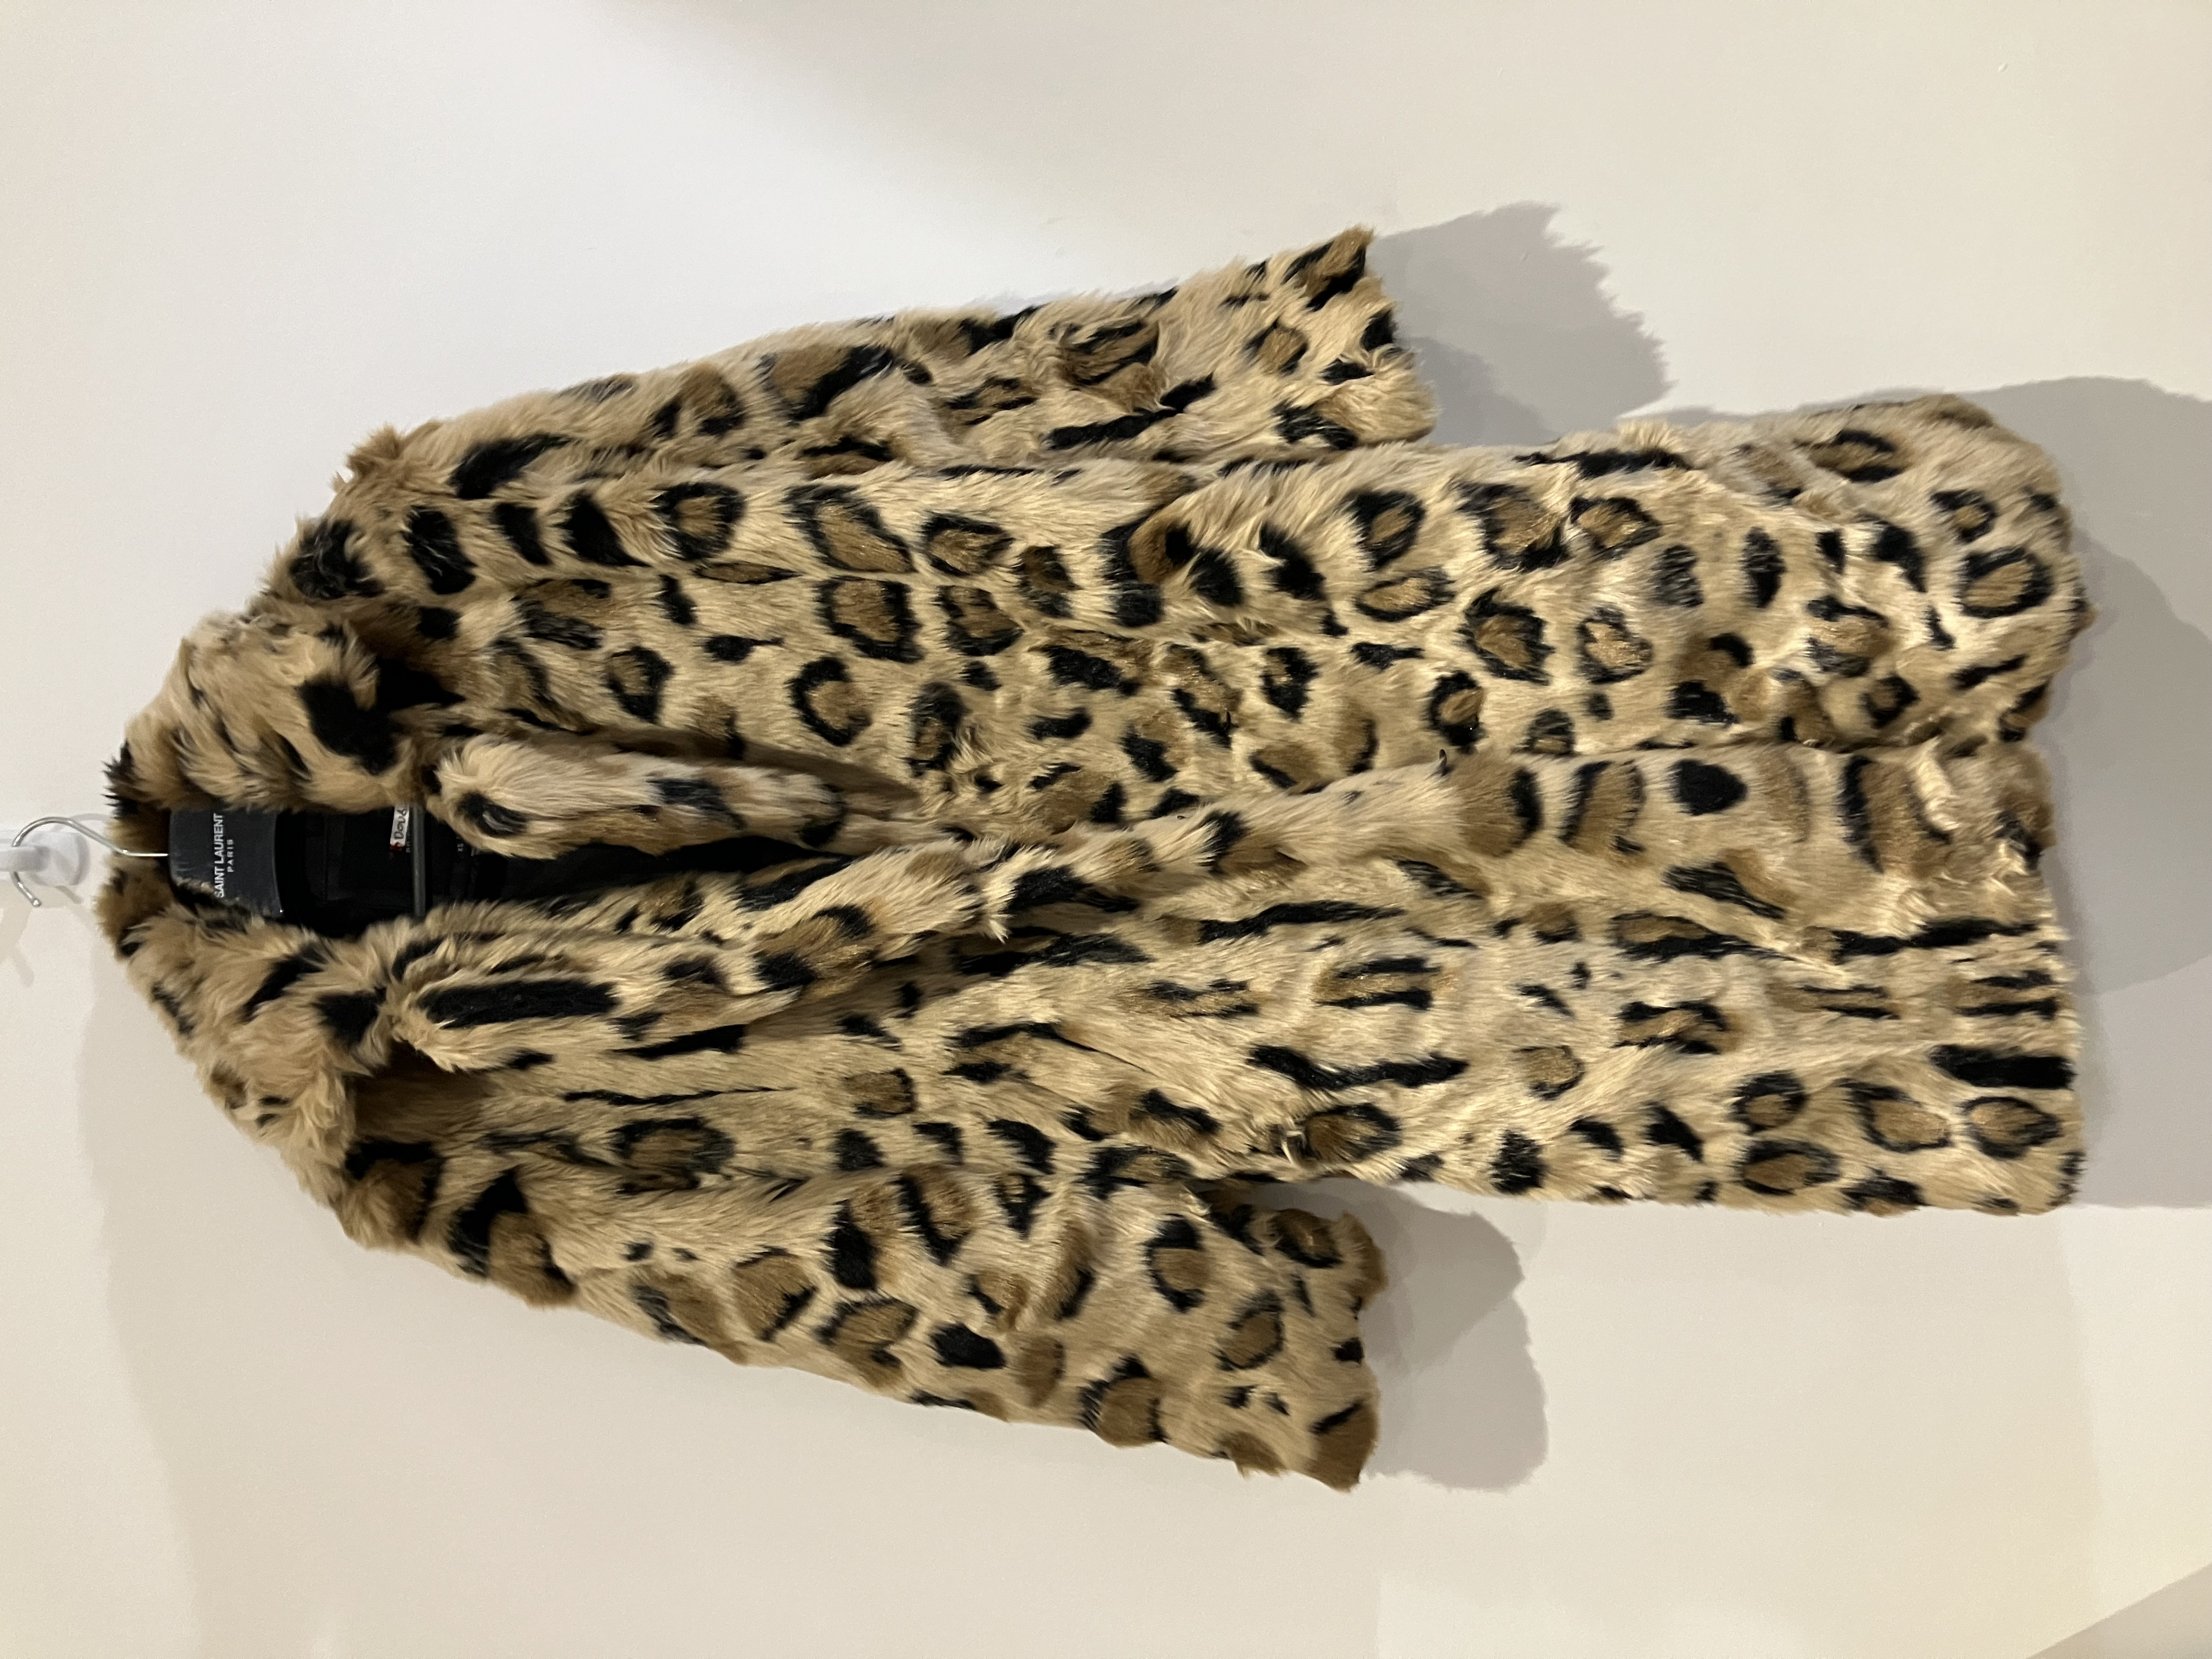 River Island Leopard Faux Fur Coat Worn By A Body Double.